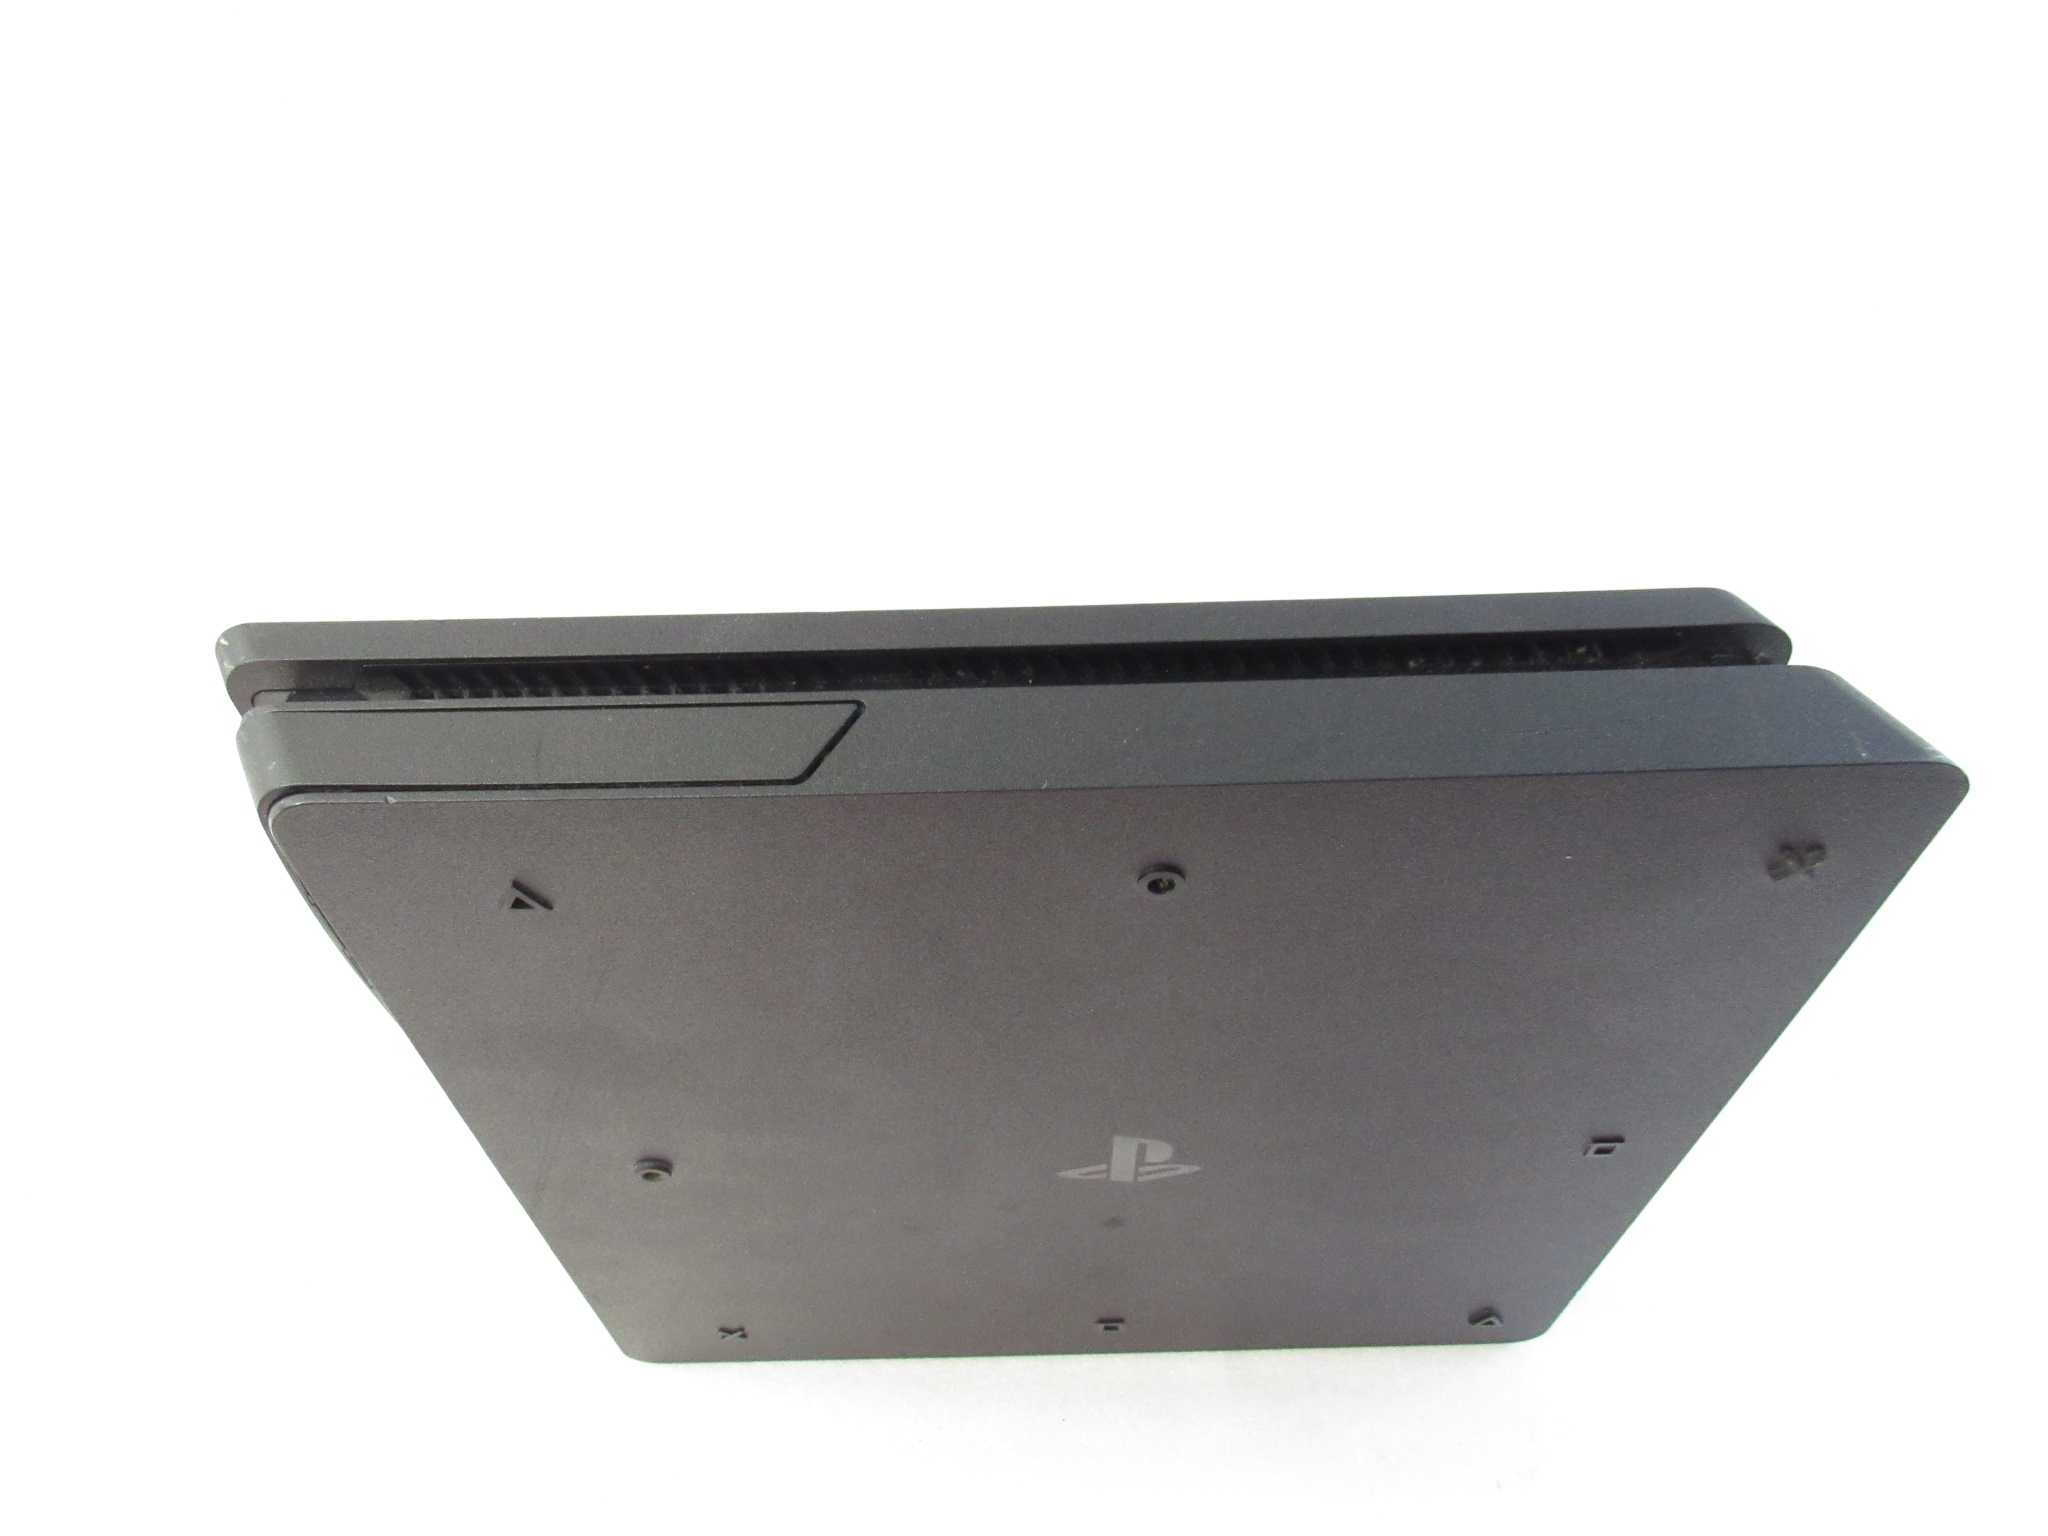 Sony PlayStation 4 Slim CUH-2215B 1TB Console PlayStation 4 Slim 1TB 2100